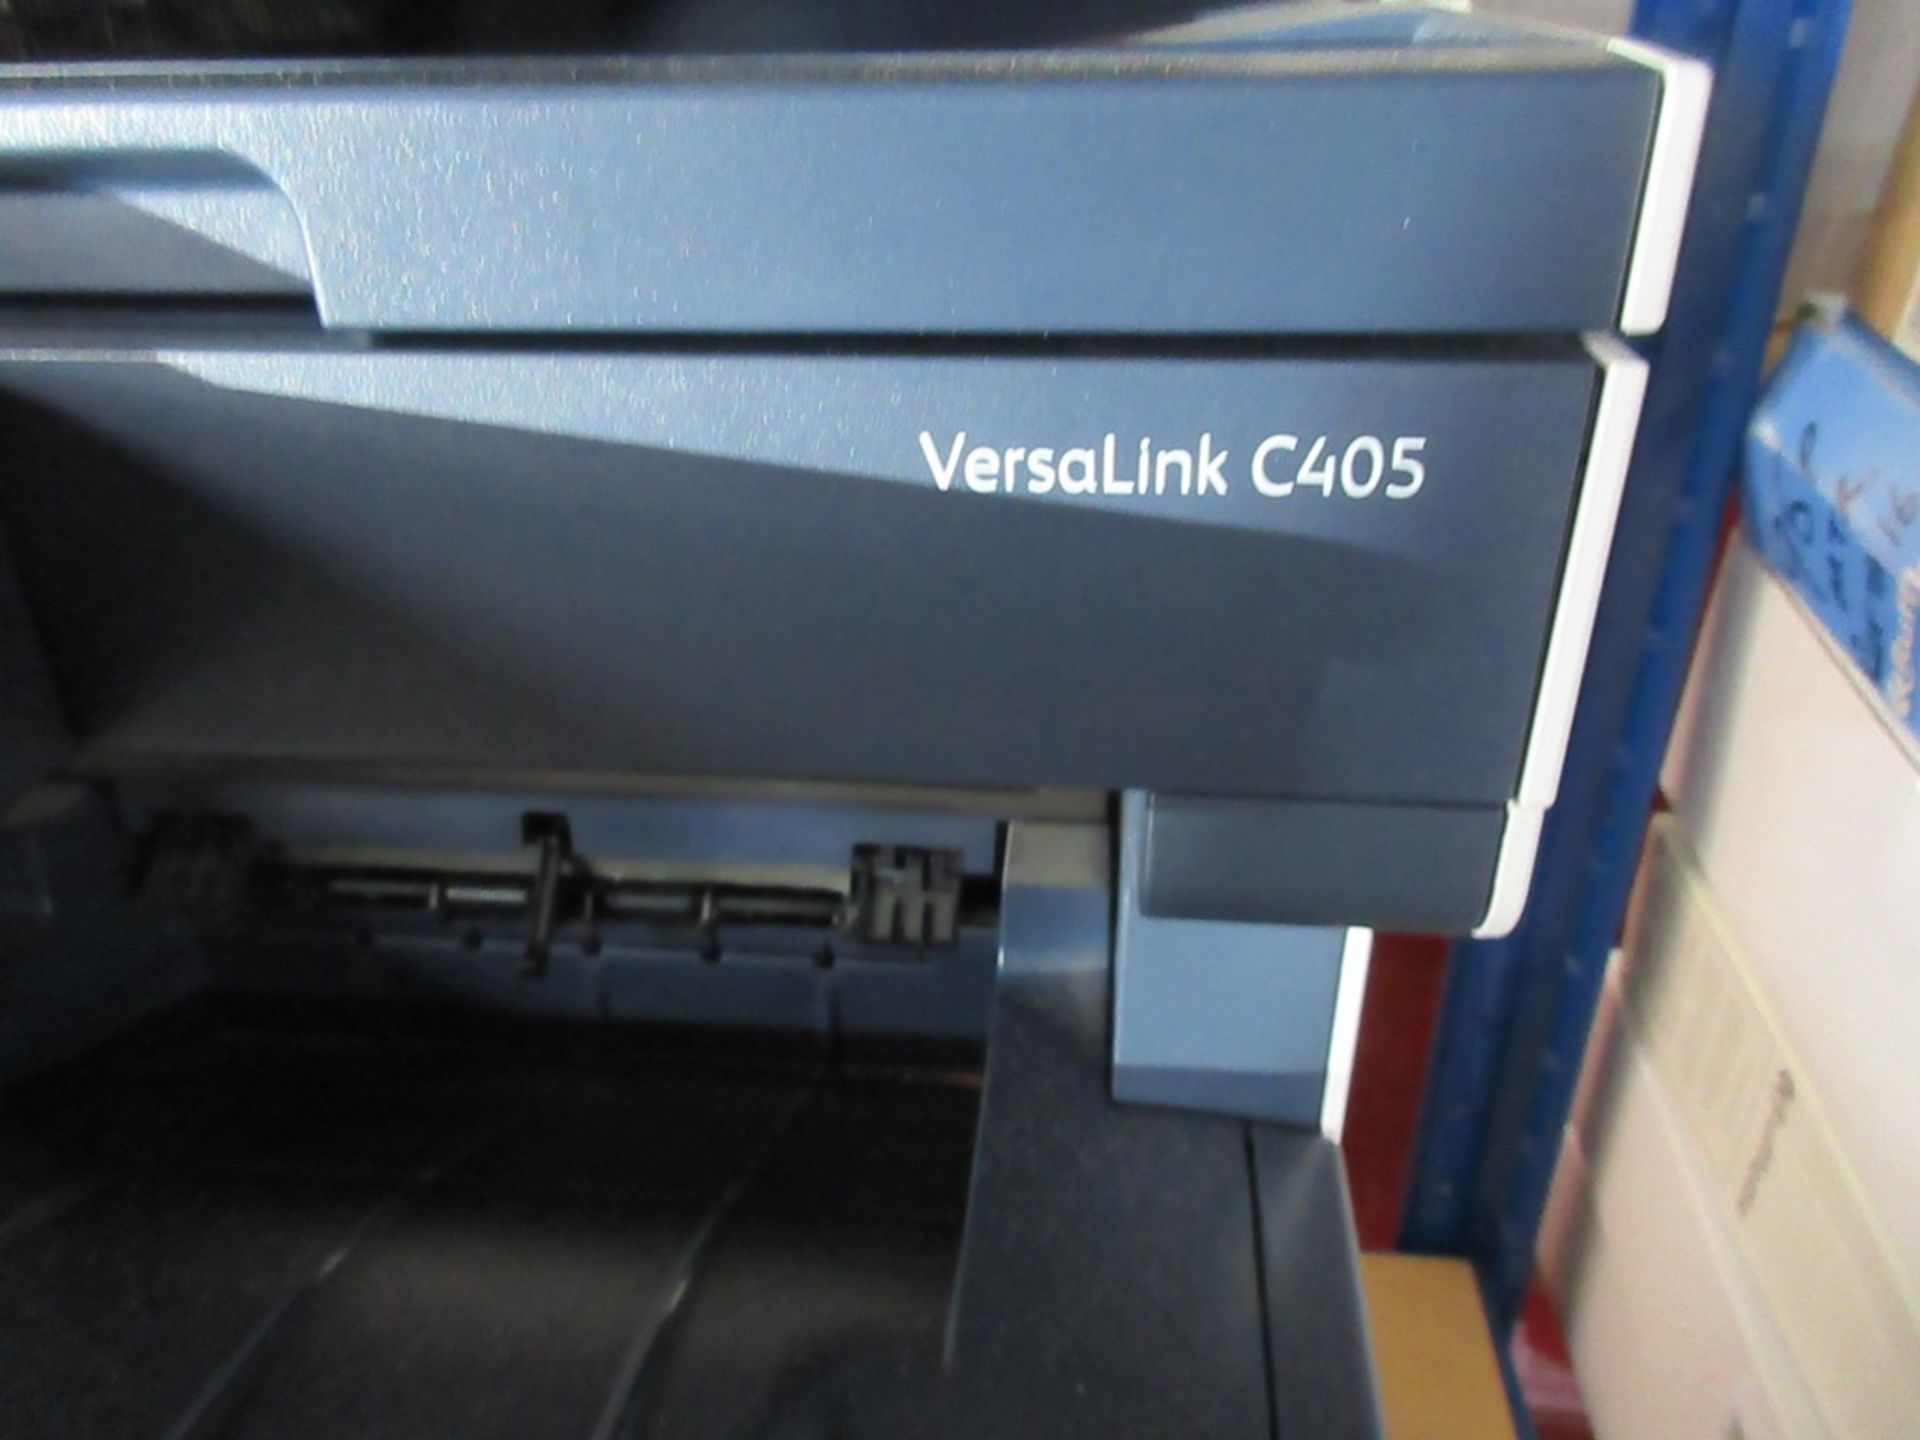 Xerox Versalink C405 printer - Image 2 of 3